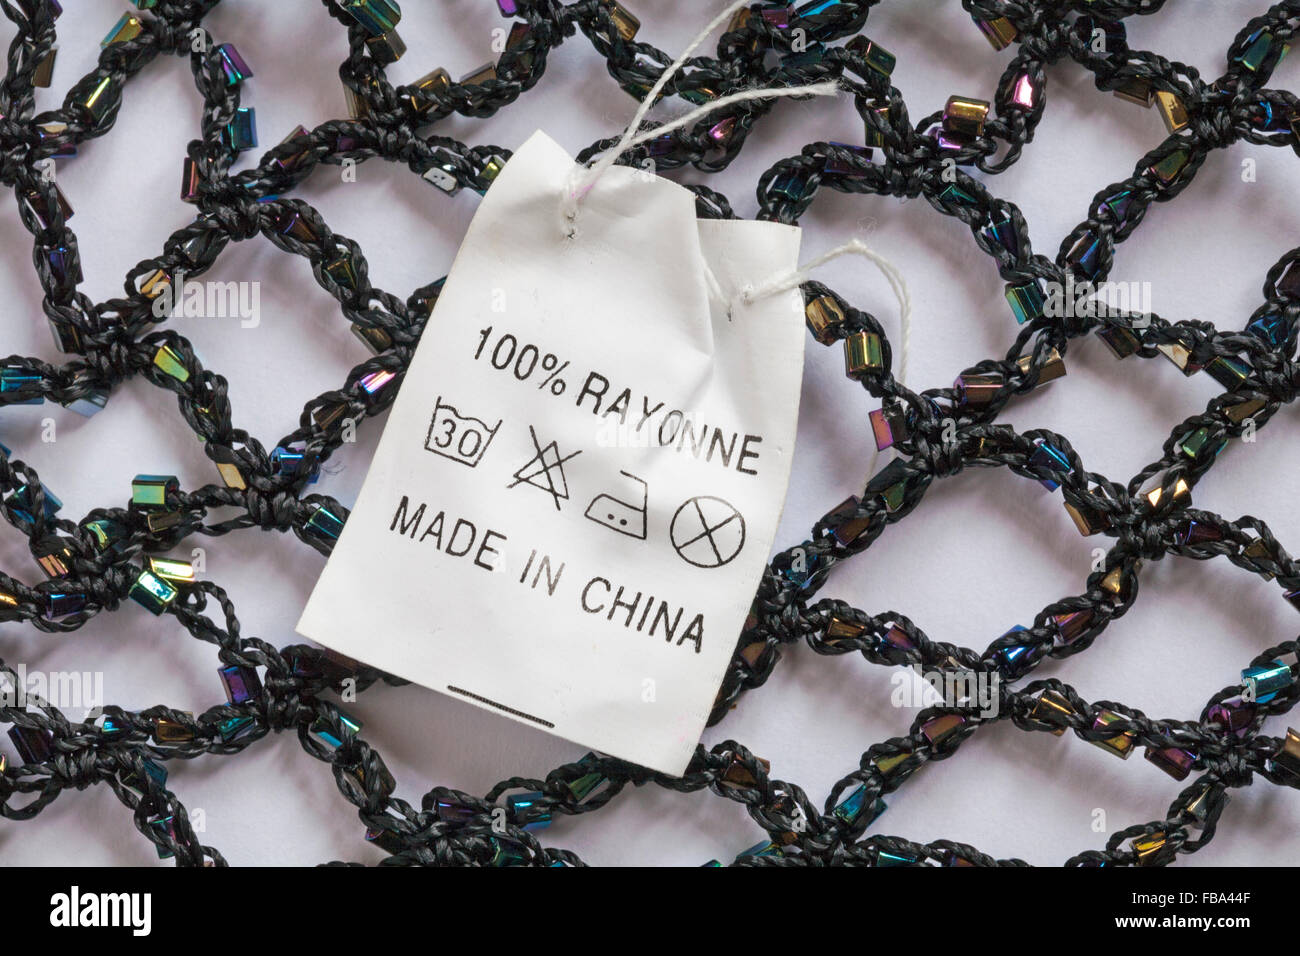 Fabbricato in Cina etichetta in 100% rayonne bordato abbigliamento - venduti nel Regno Unito Regno Unito, Gran Bretagna Foto Stock